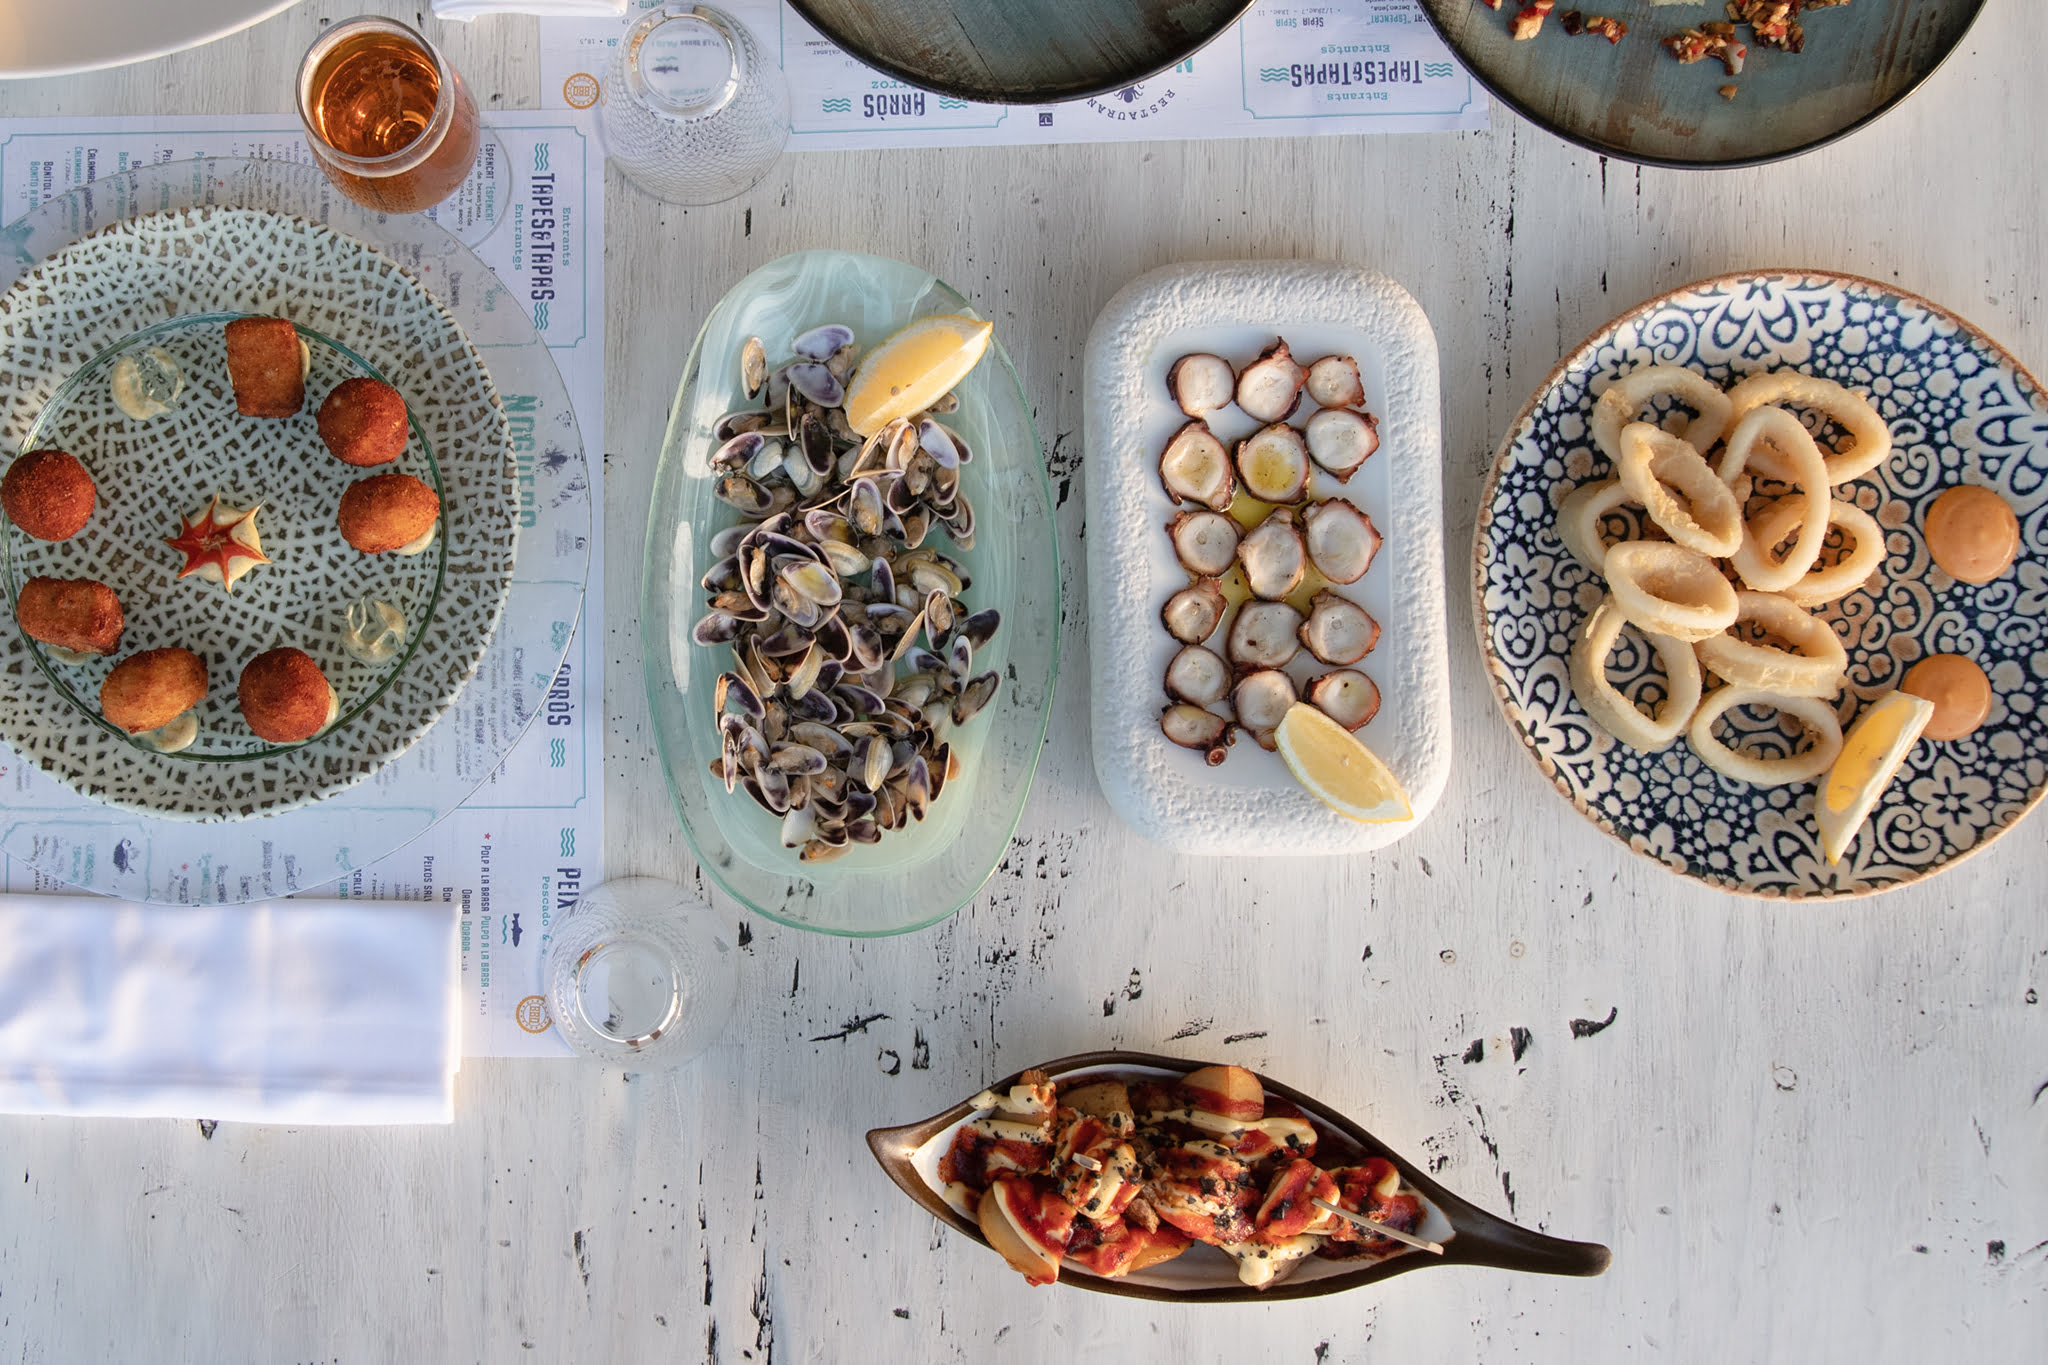 Tellinas, pulpo seco y calamares – Restaurant Noguera